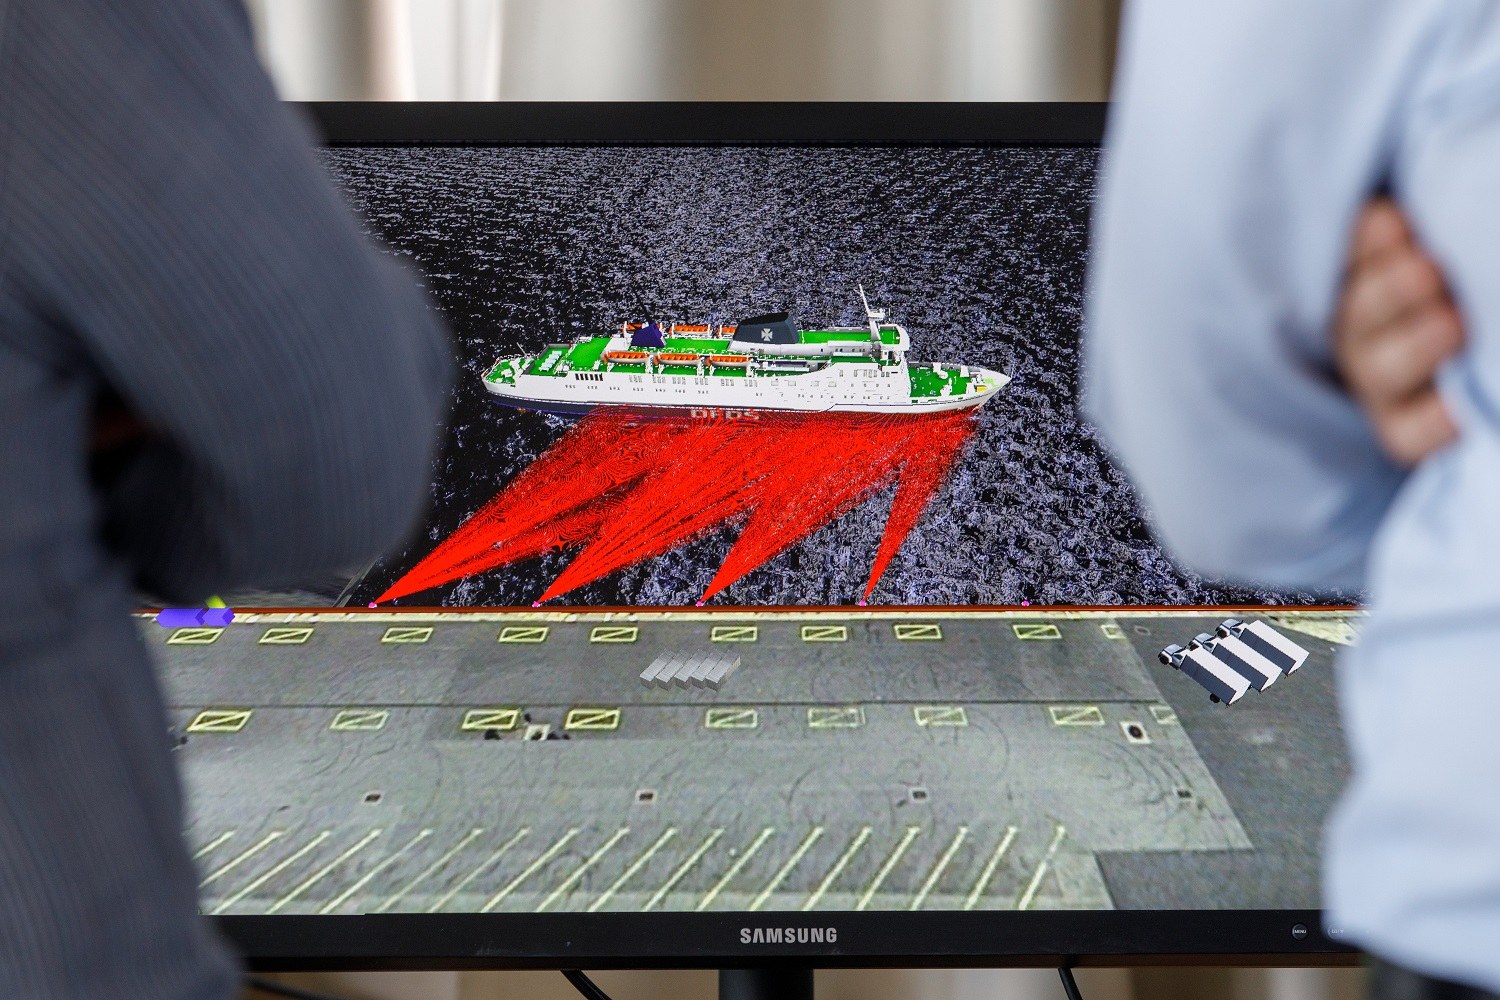 Sensoren erfassen die Umgebung und unterstützen Schiffsführerinnen und Schiffsführer beim Anlegen